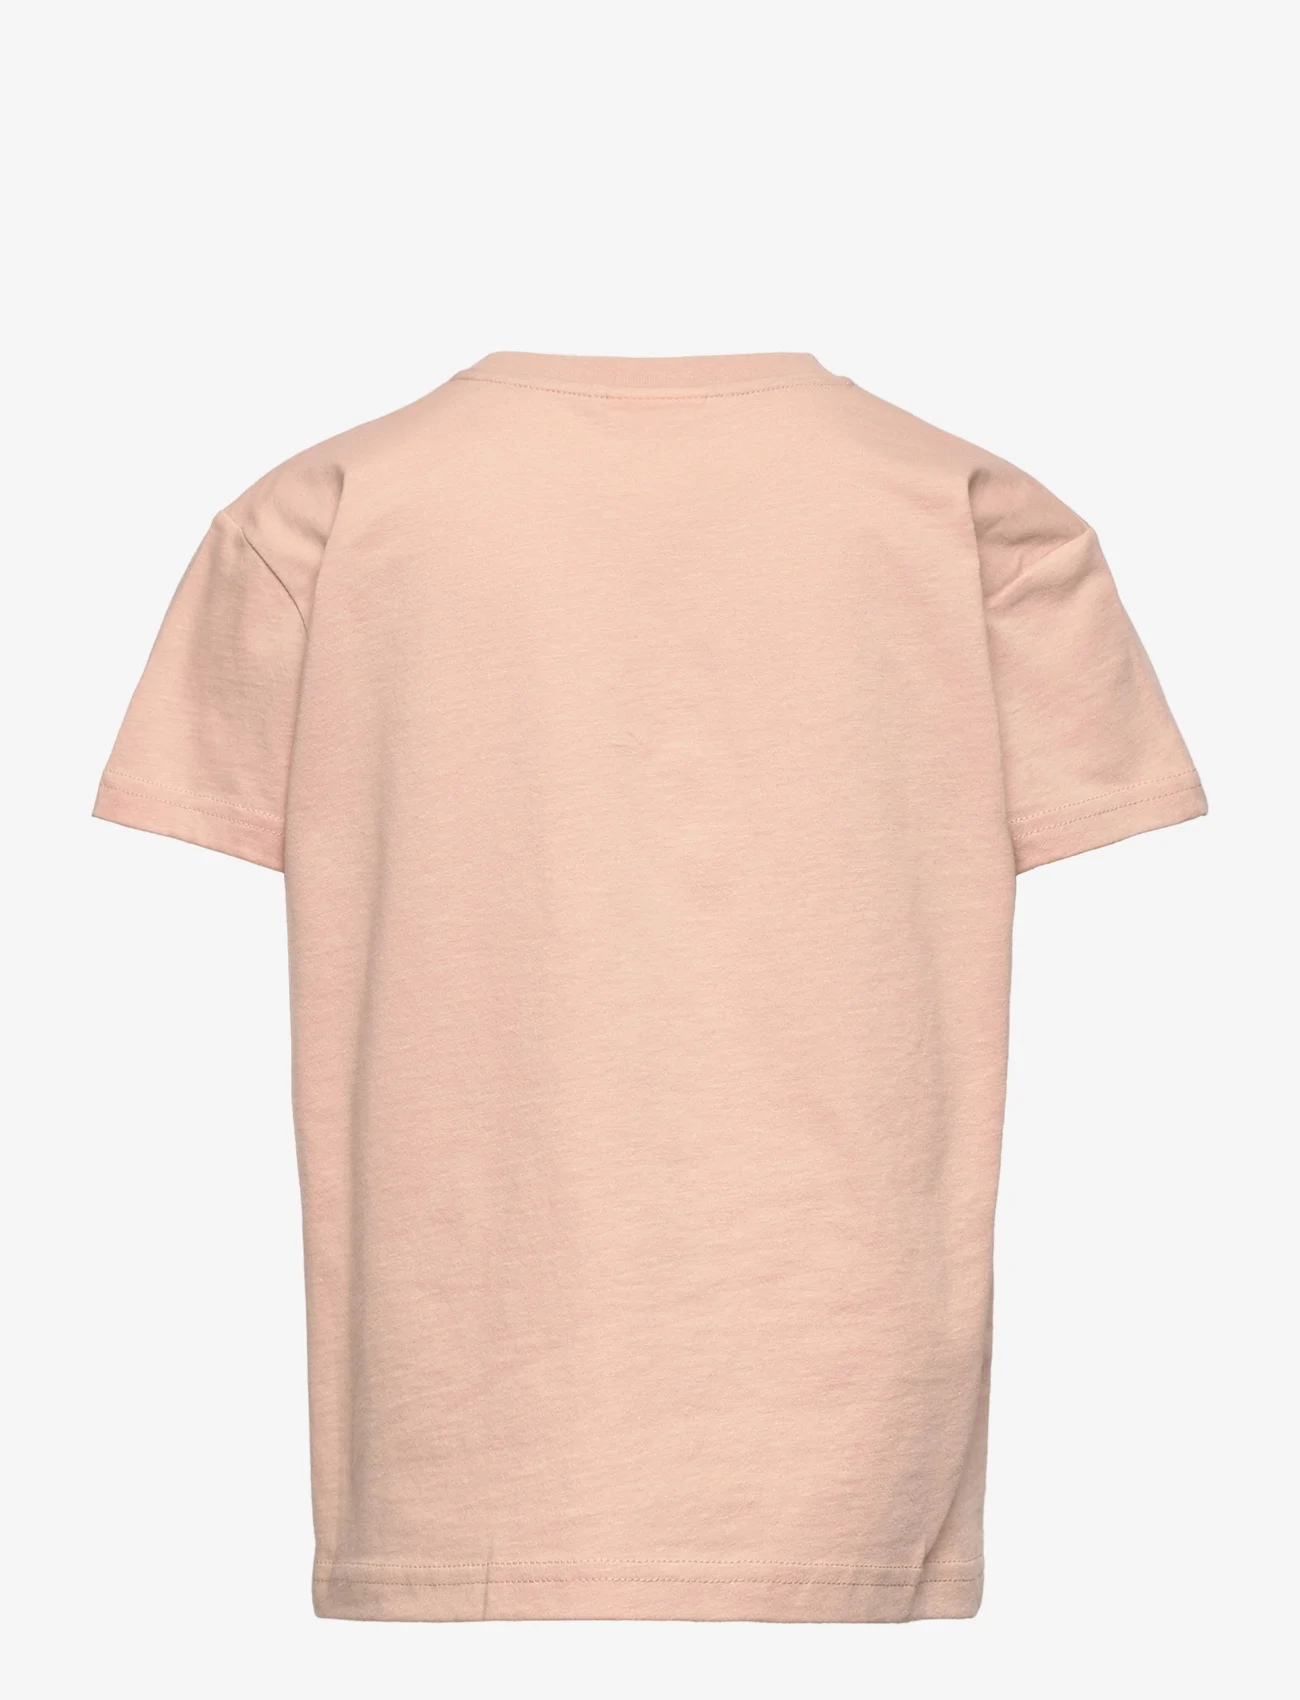 Sofie Schnoor Baby and Kids - T-shirt - lyhythihaiset t-paidat - light rose - 1